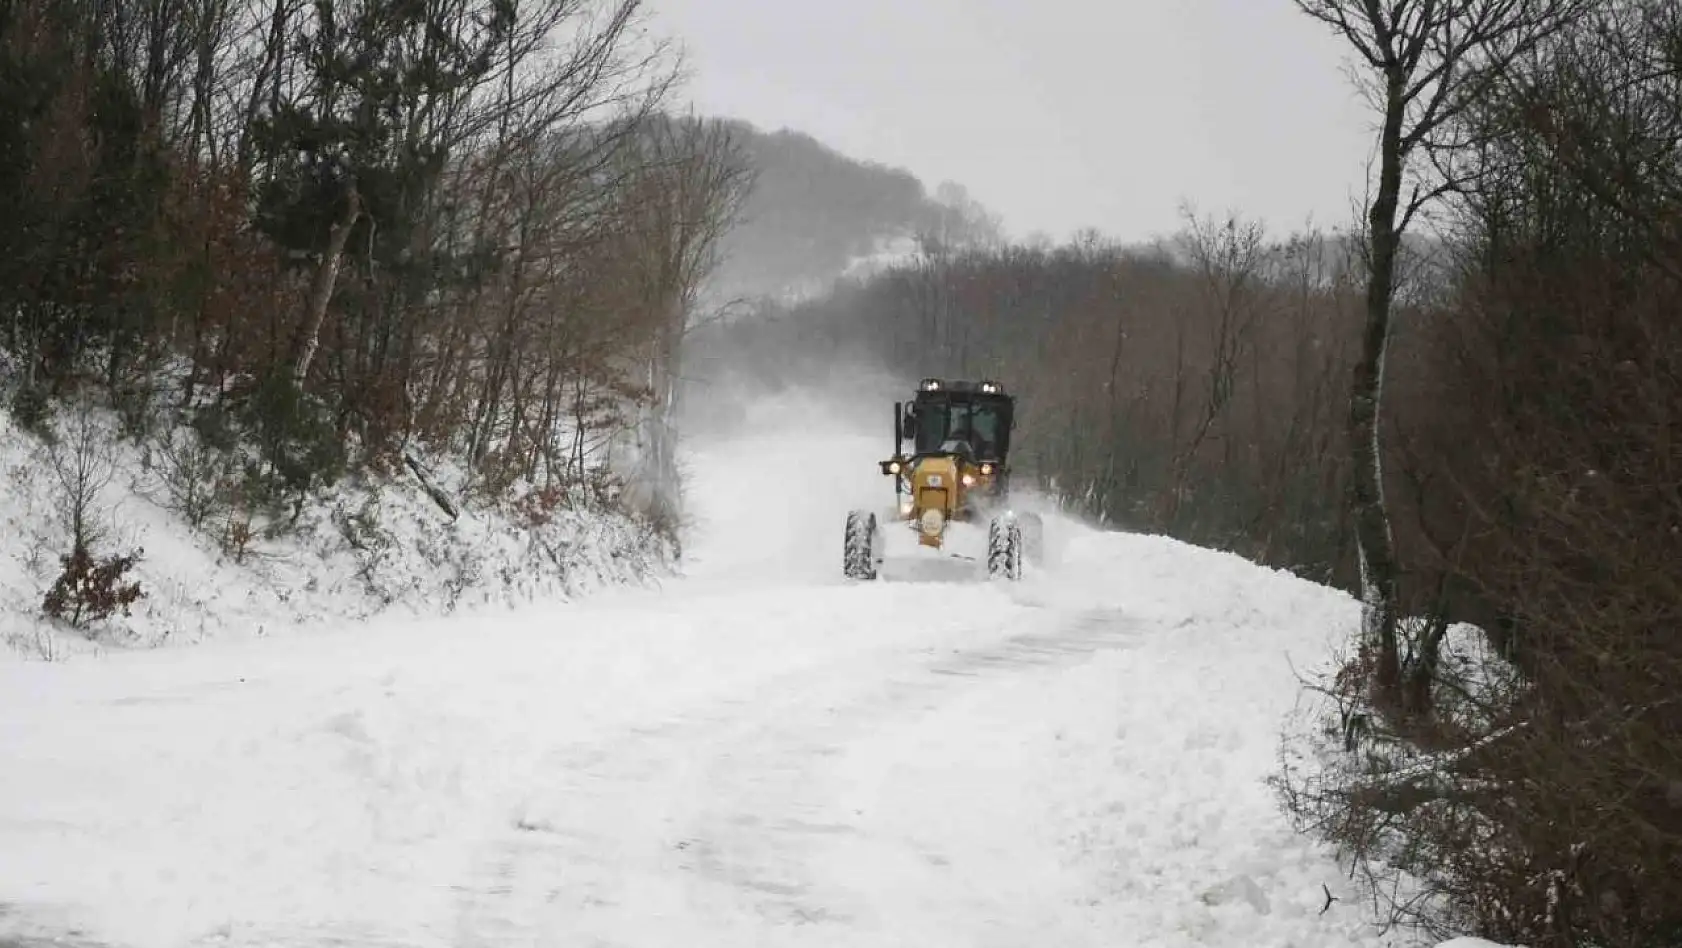 Lapseki'de karla mücadele çalışmaları devam ediyor